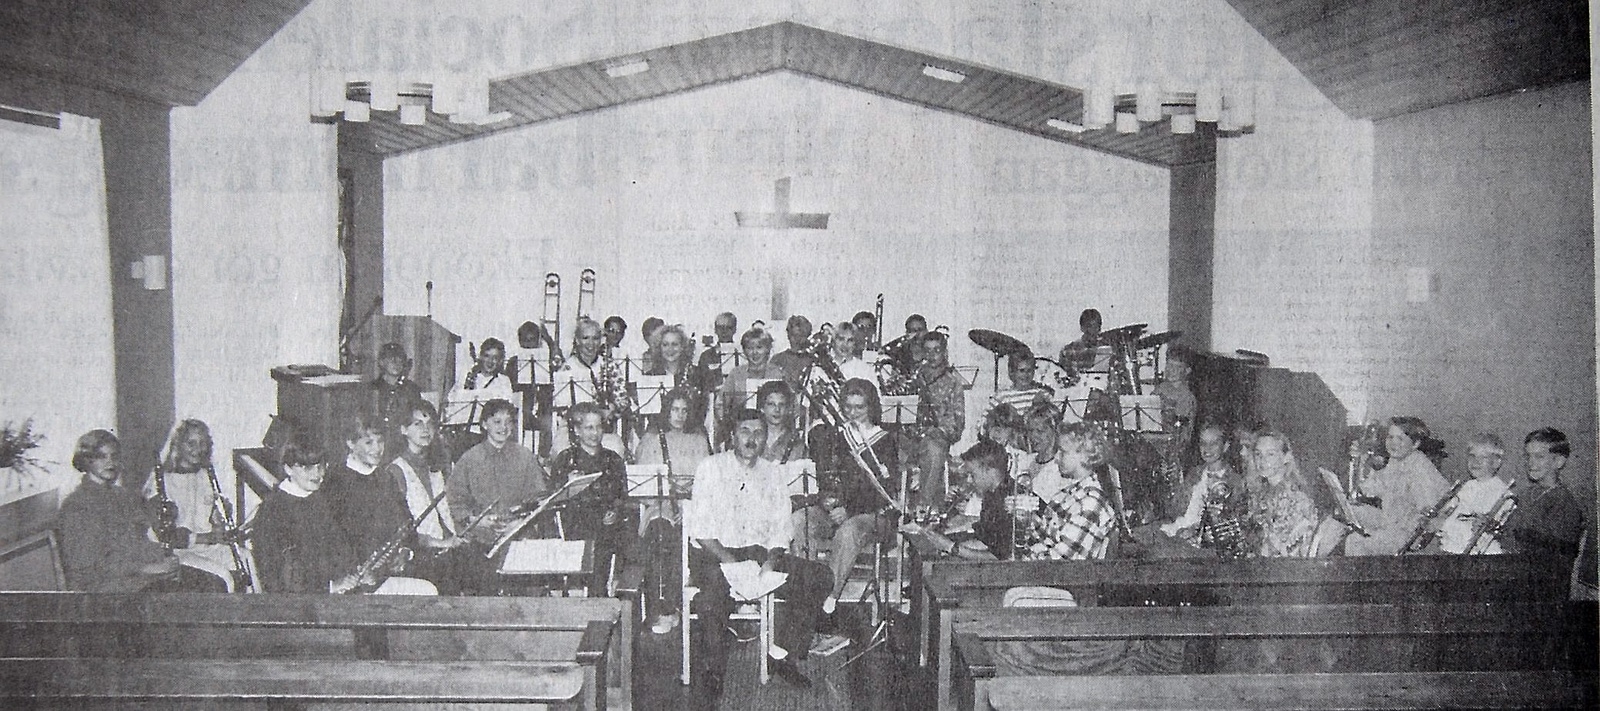 Nästan alla skolelever i Röke spelar något instrument. På bilden syns även dirigenten och musikläraren Ingemar Karp.
Arkiv: Olle Andersson